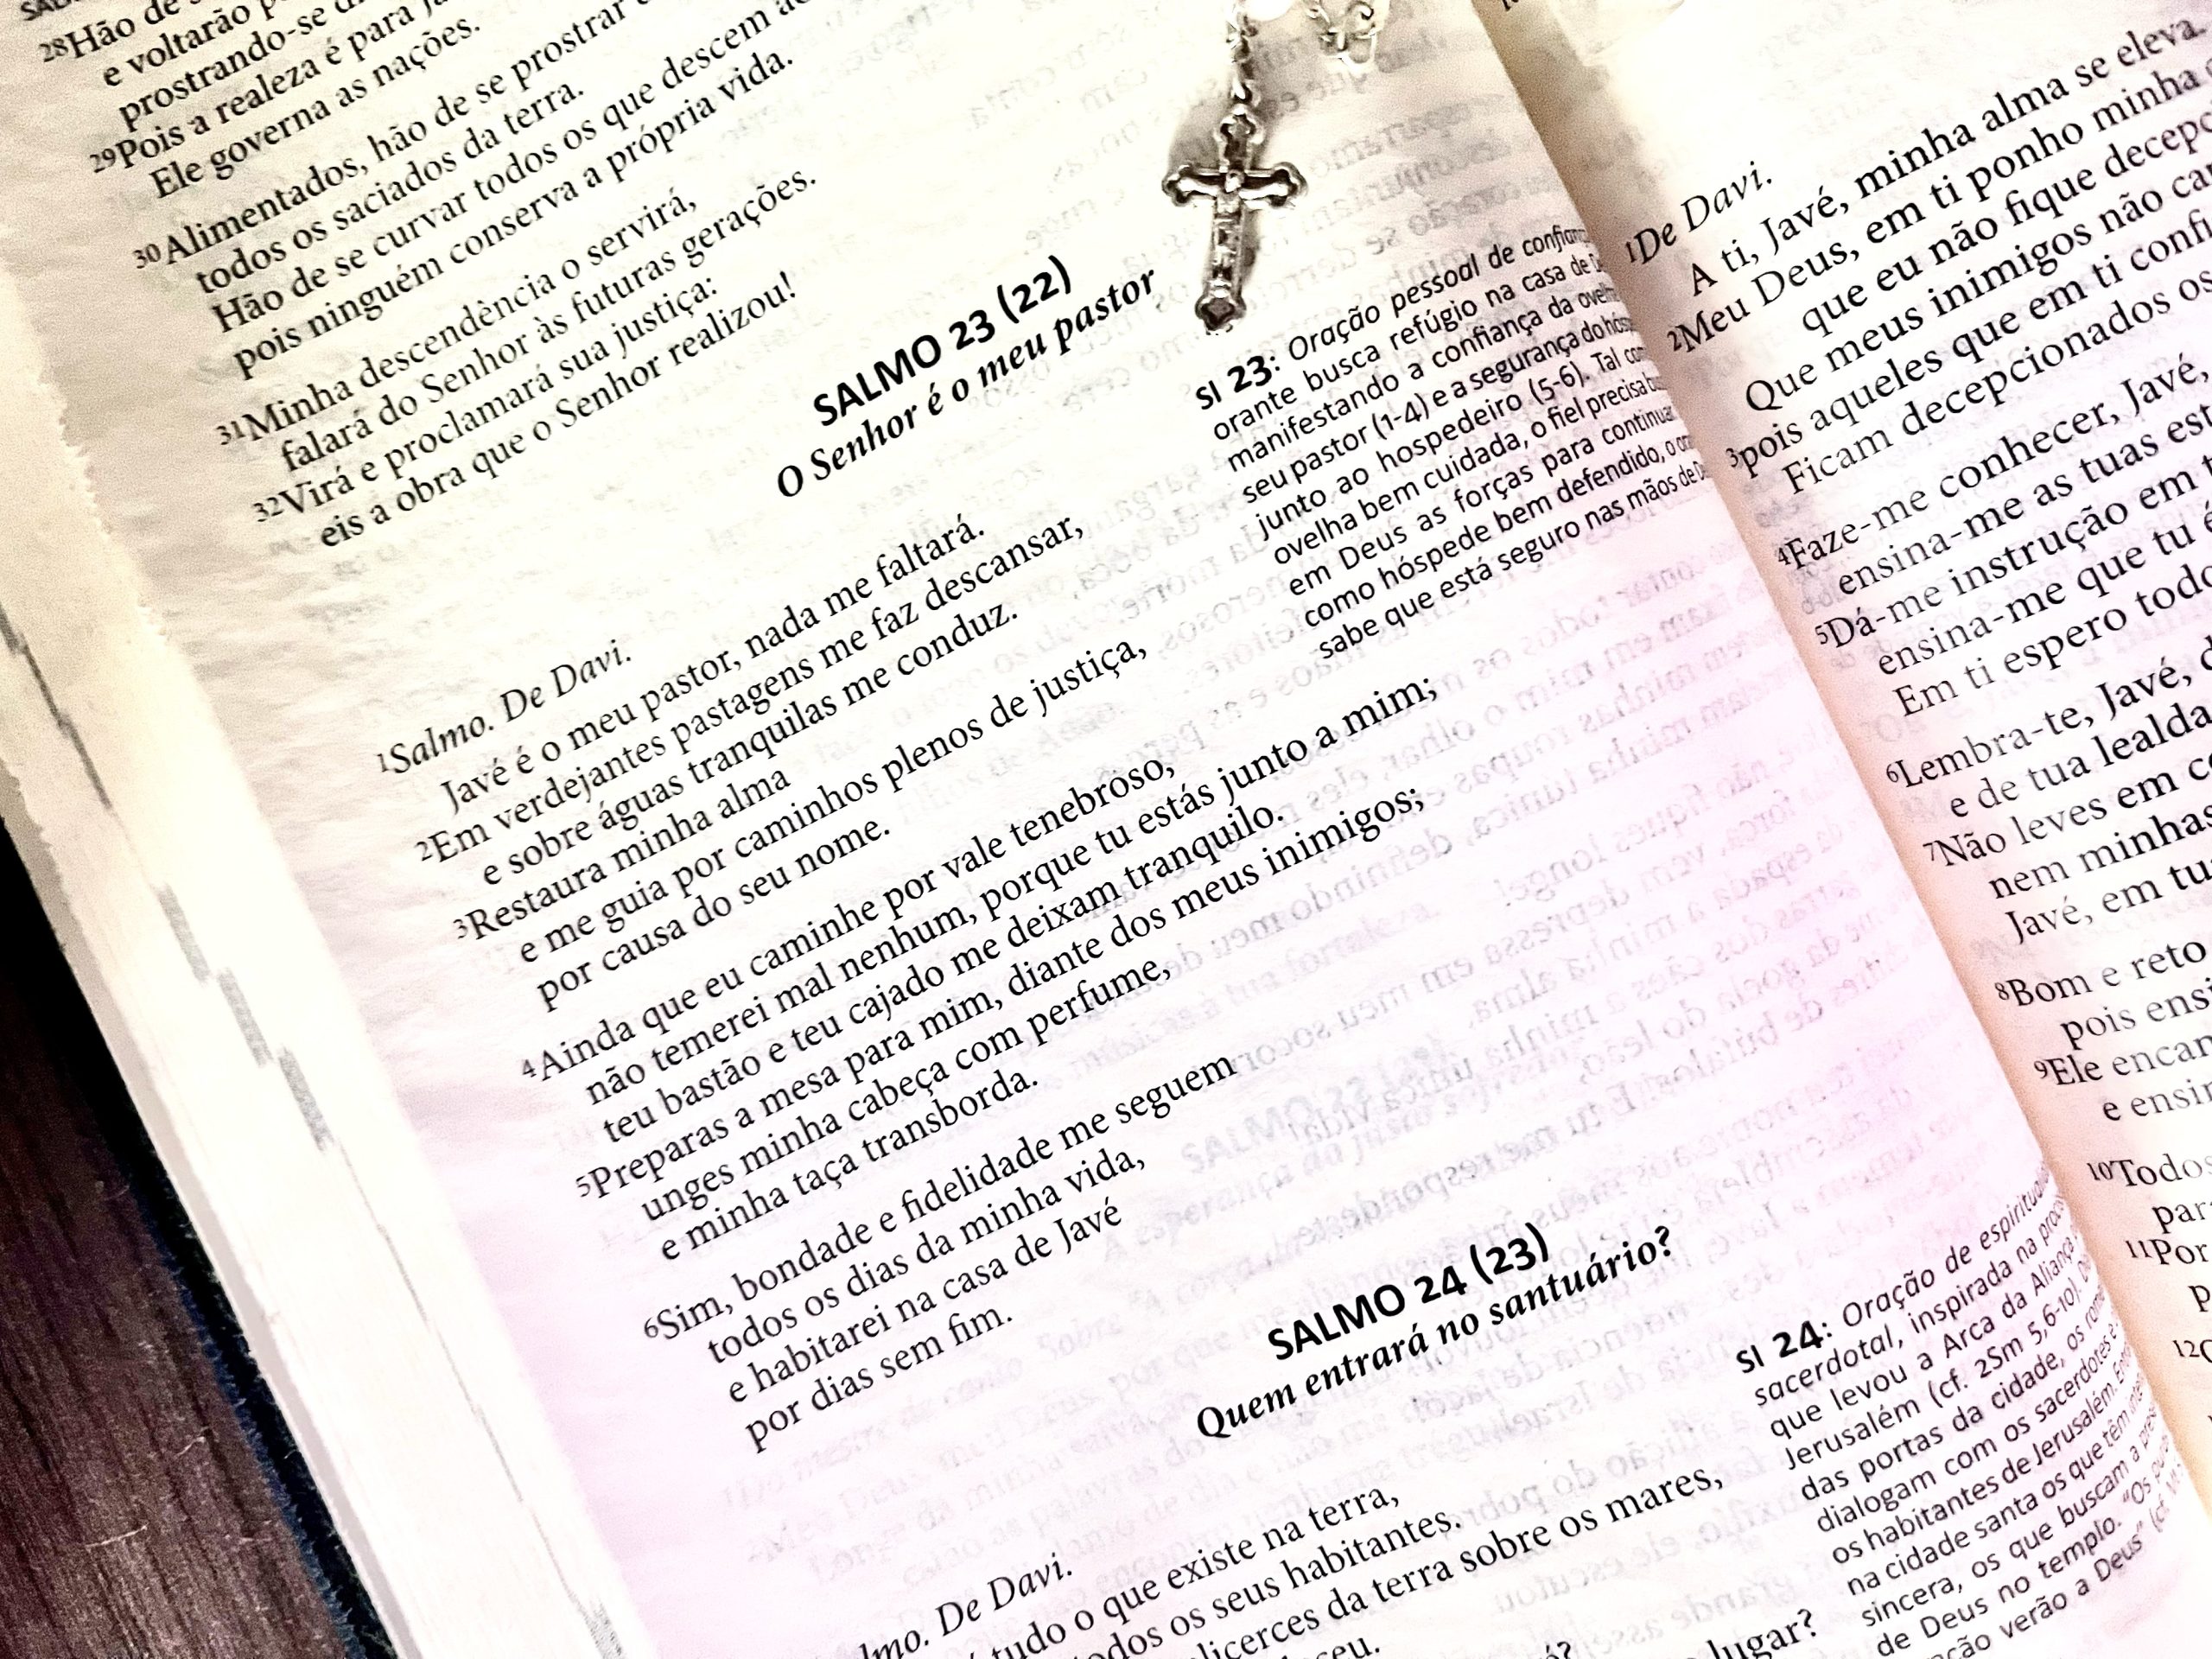 Yahweh é meu pastor. Não faltarei”. Uma proposta de tradução e  interpretação para o Salmo 23